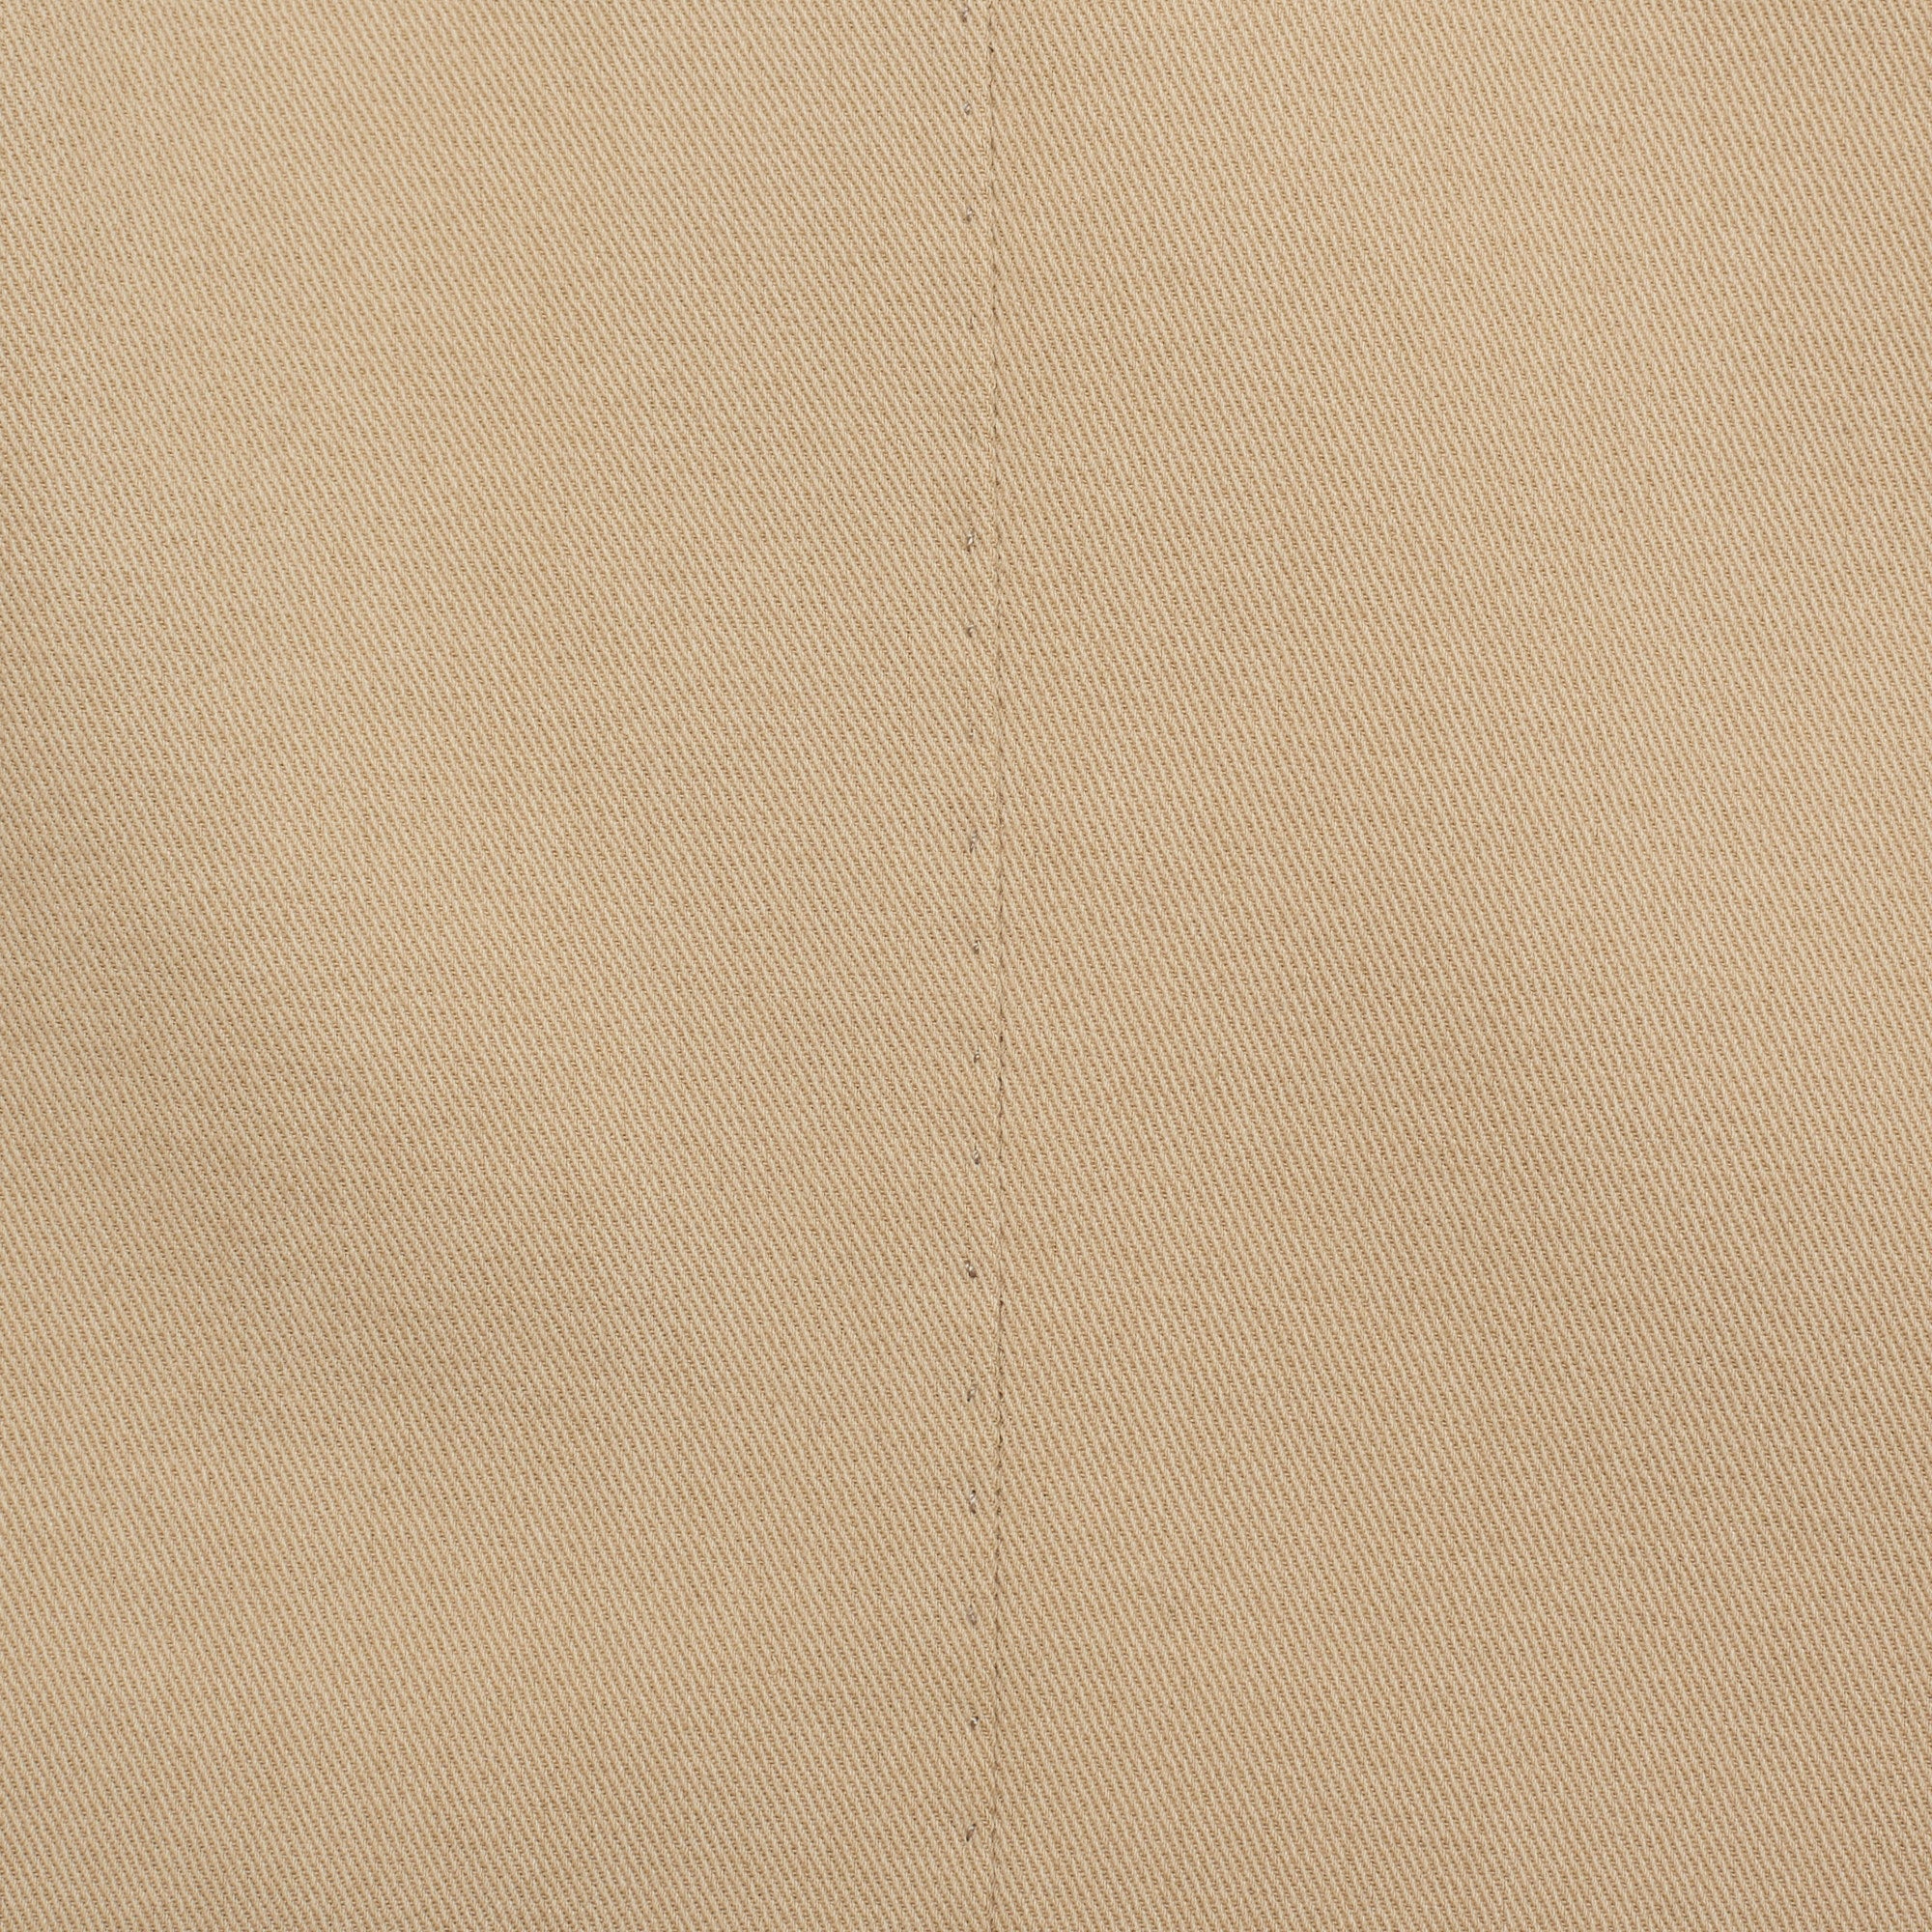 CESARE ATTOLINI Napoli Handmade Beige Twill Cotton Suit EU 54 US 44 Slim Regular Fit CESARE ATTOLINI